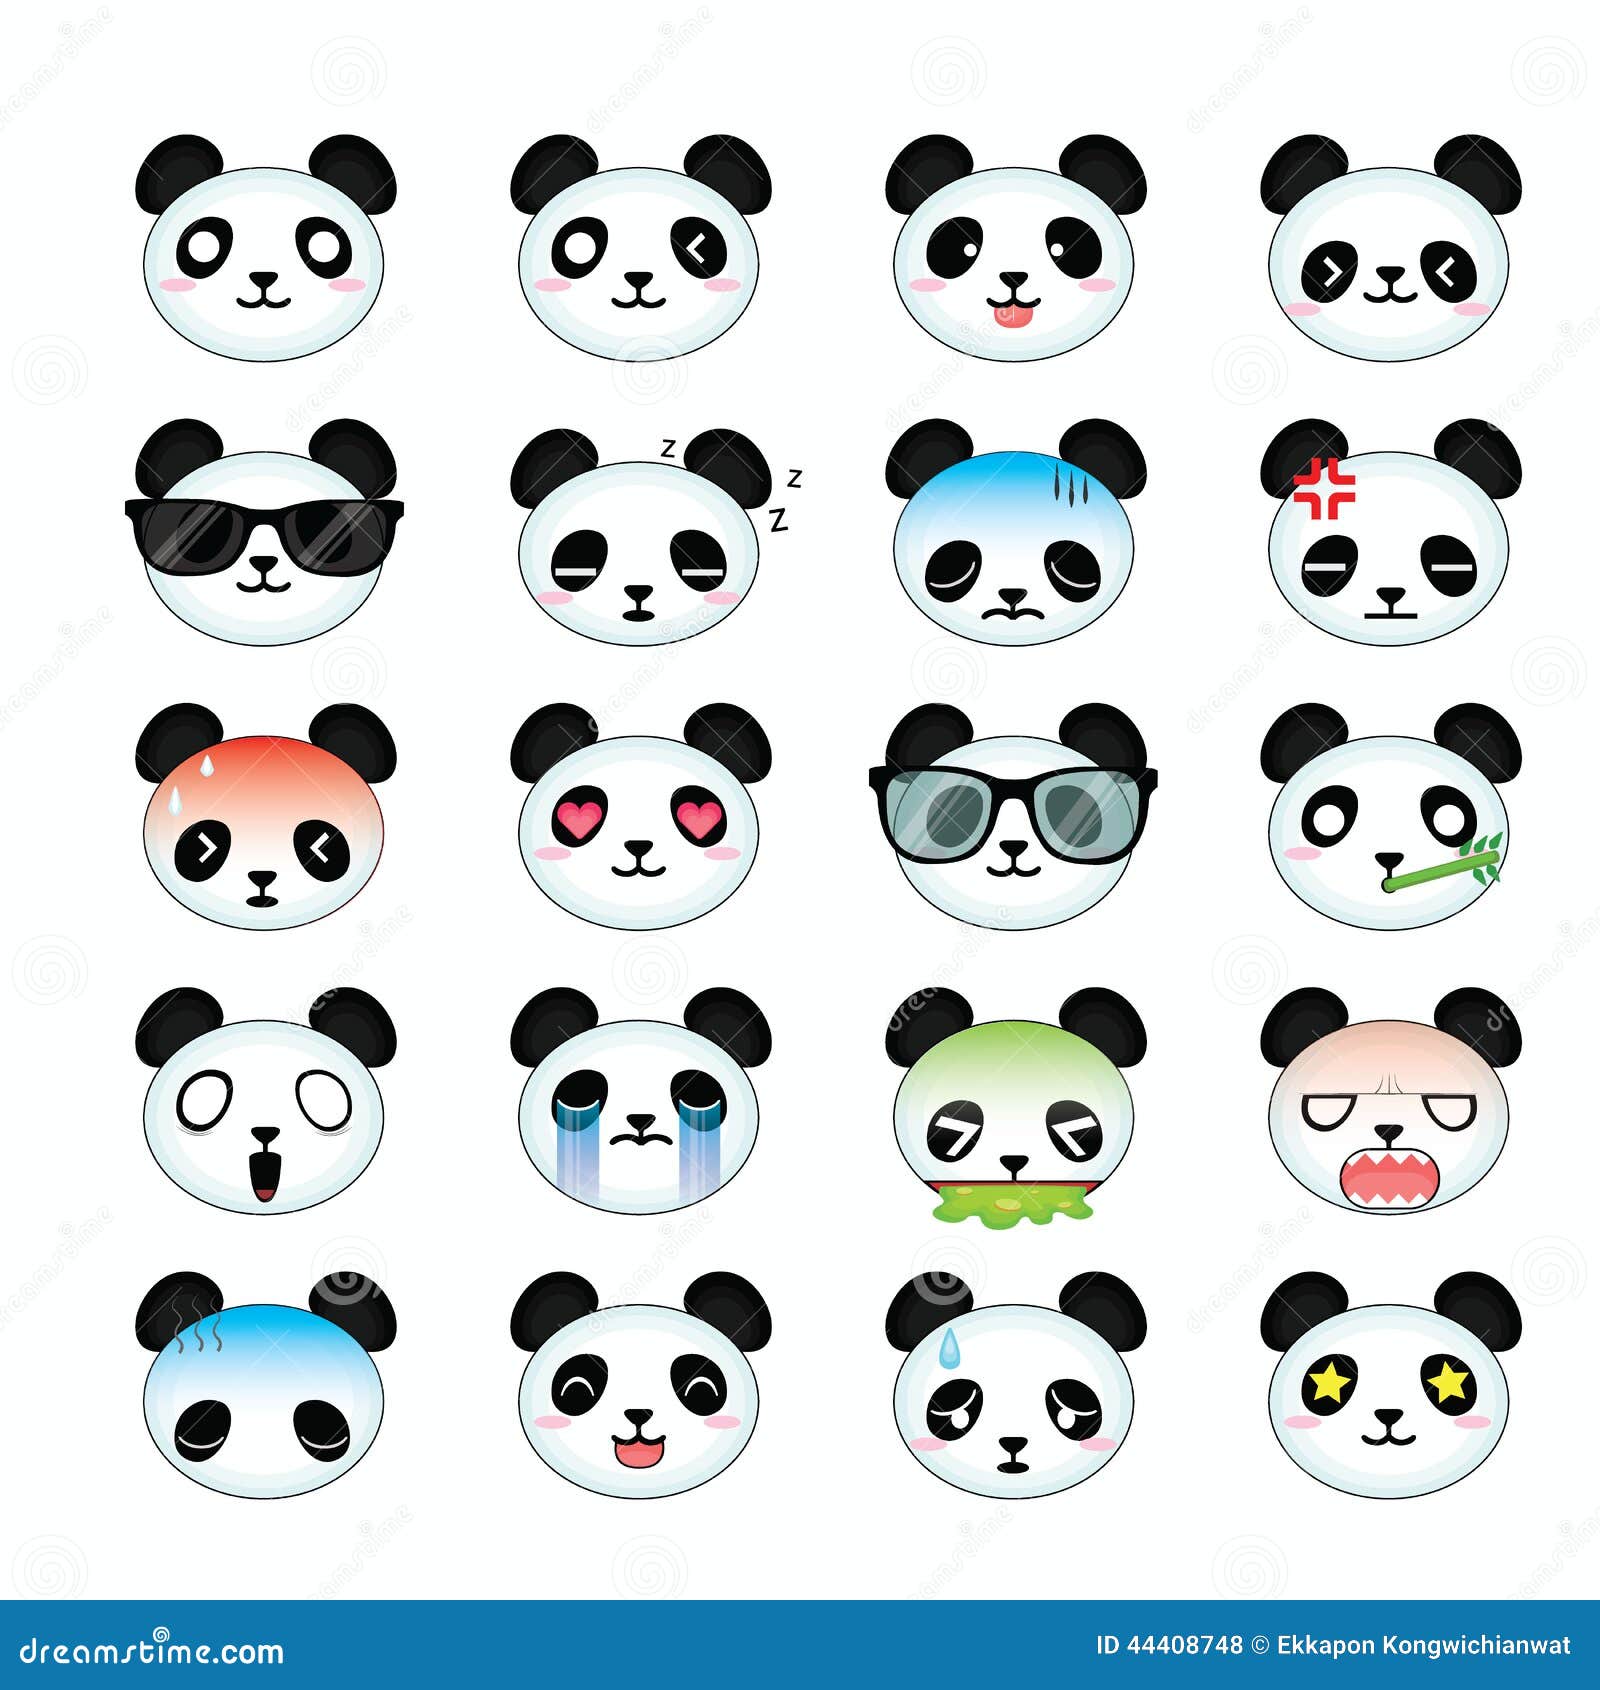 clipart panda smiley face - photo #43